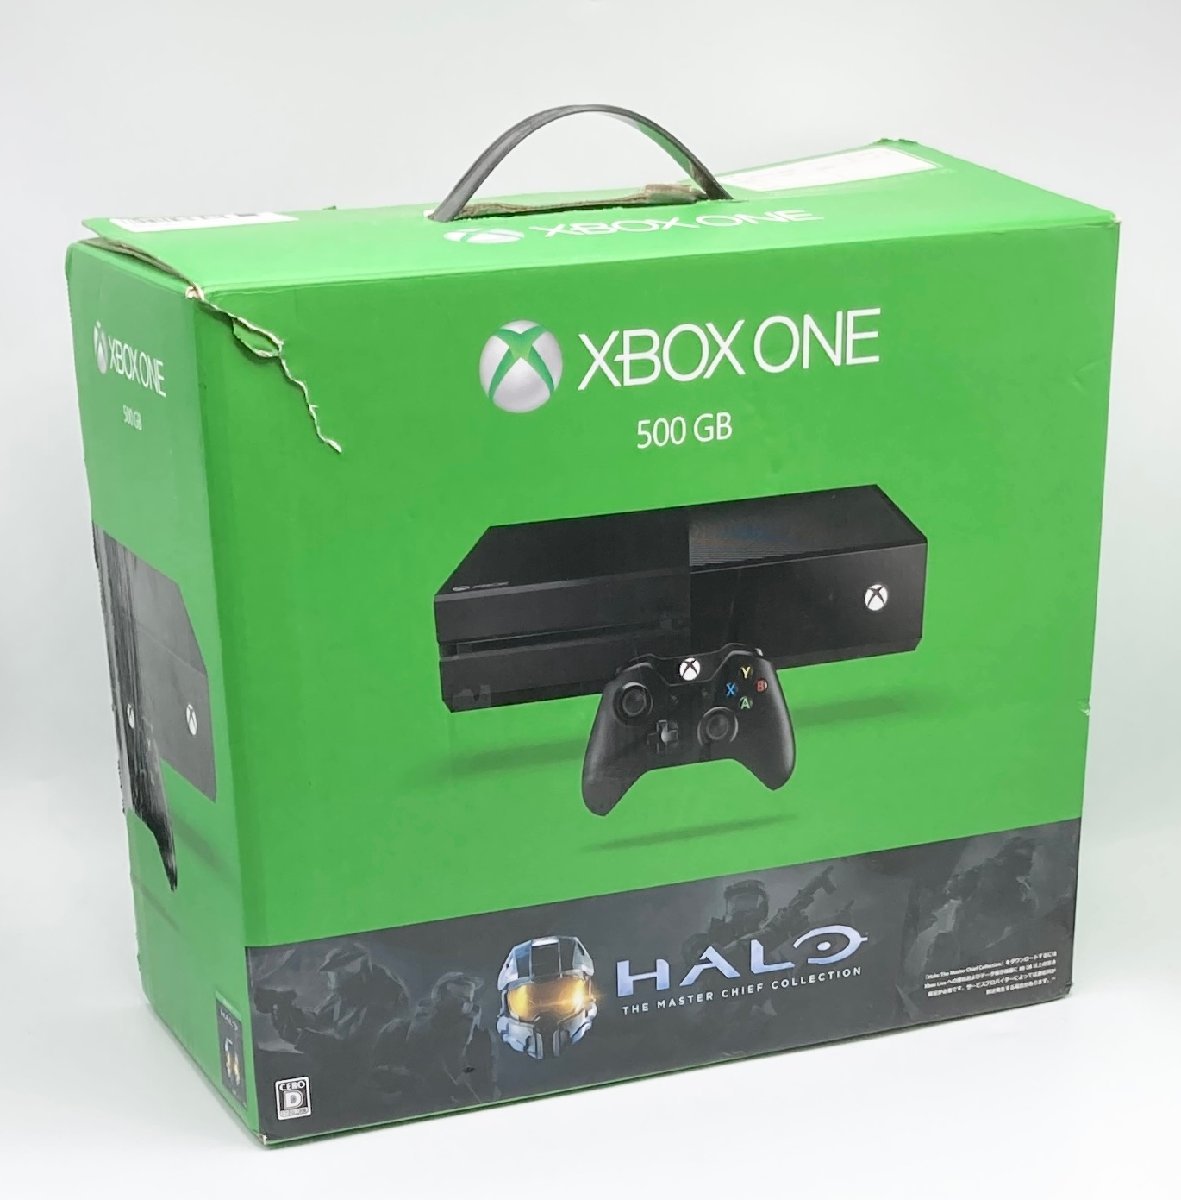 上等な Xbox One 【メーカー生産終了】 5C6-00098 同梱版) Collection Chief Master The (Halo: 500GB 本体